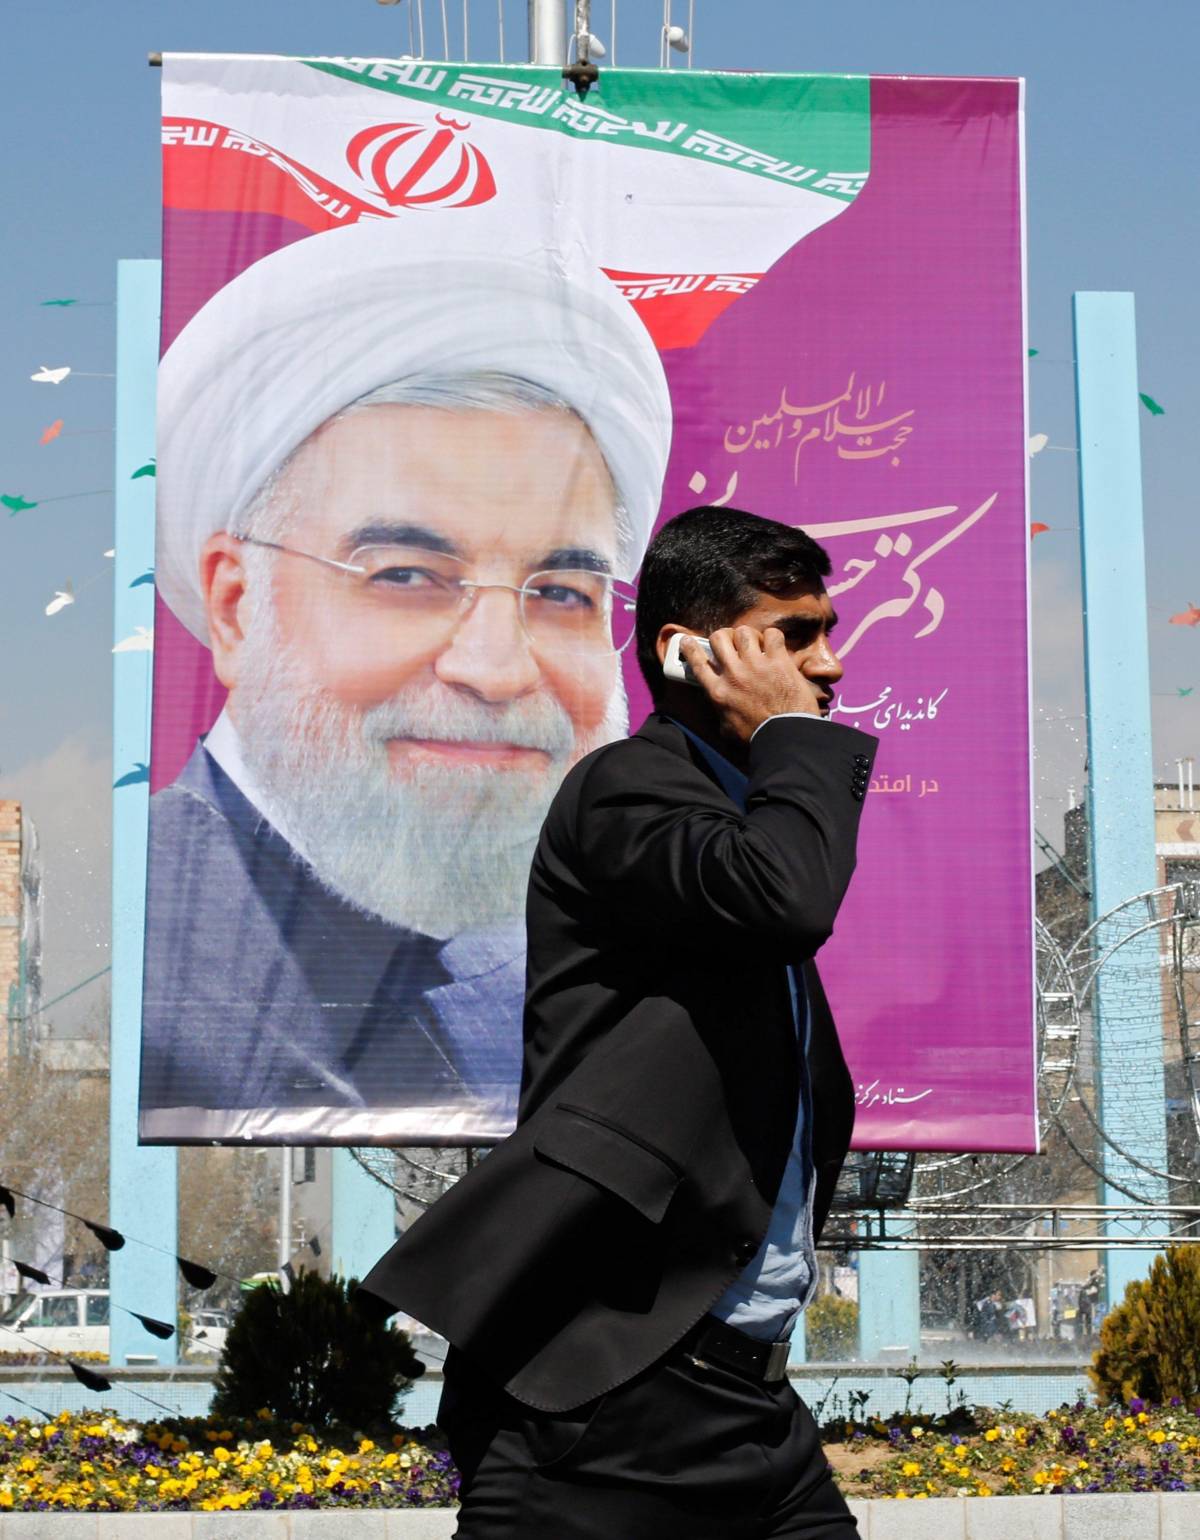 L'Iran svolta: stravincono i moderati